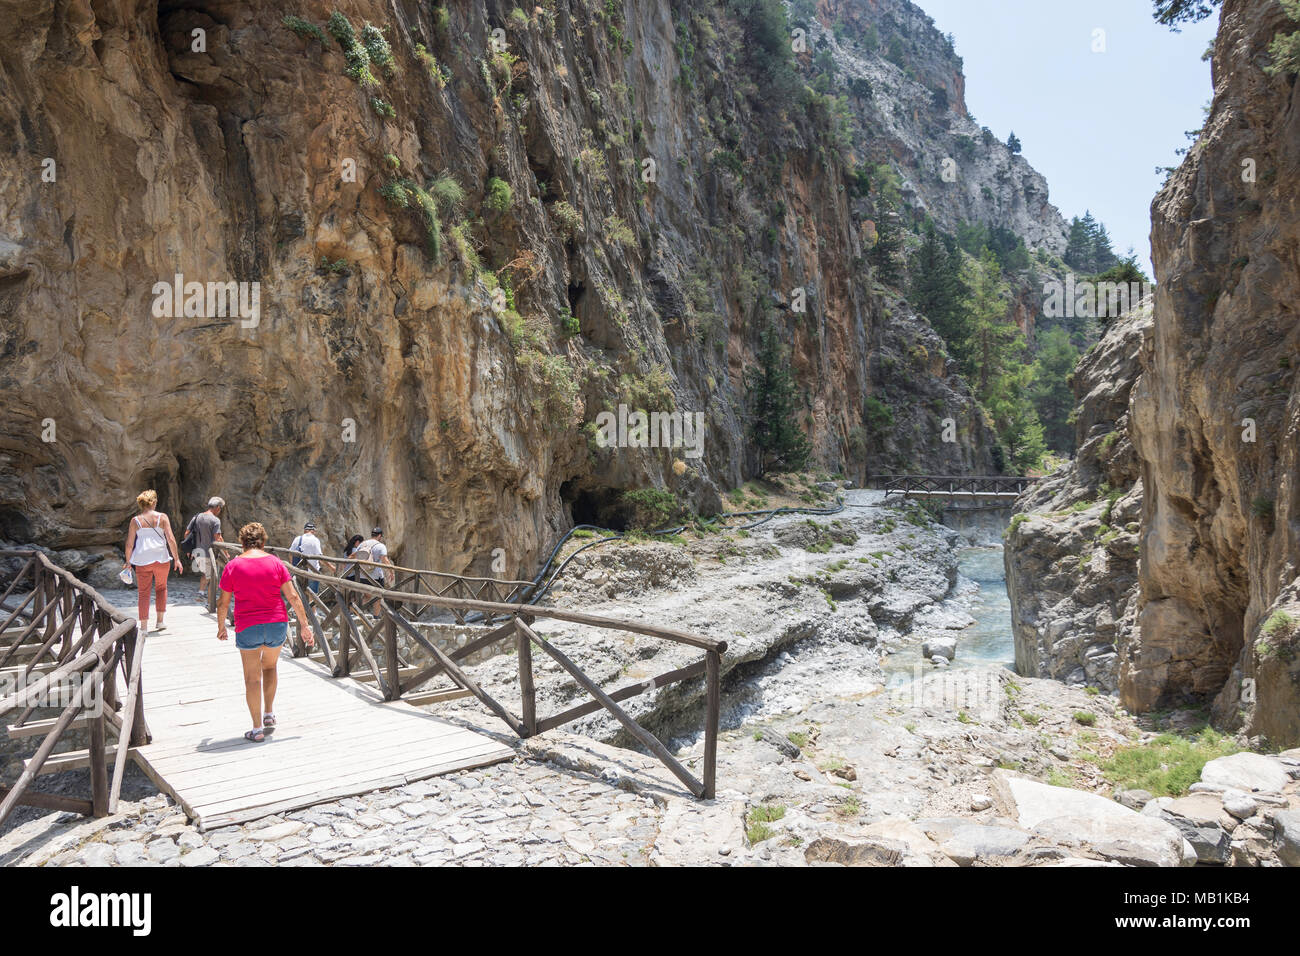 Wanderer zu Fuß durch die engen Portes Abschnitt der Samaria Schlucht. Agia Roumeli, Sfakia, Region Chania, Kreta (Kriti), Griechenland Stockfoto